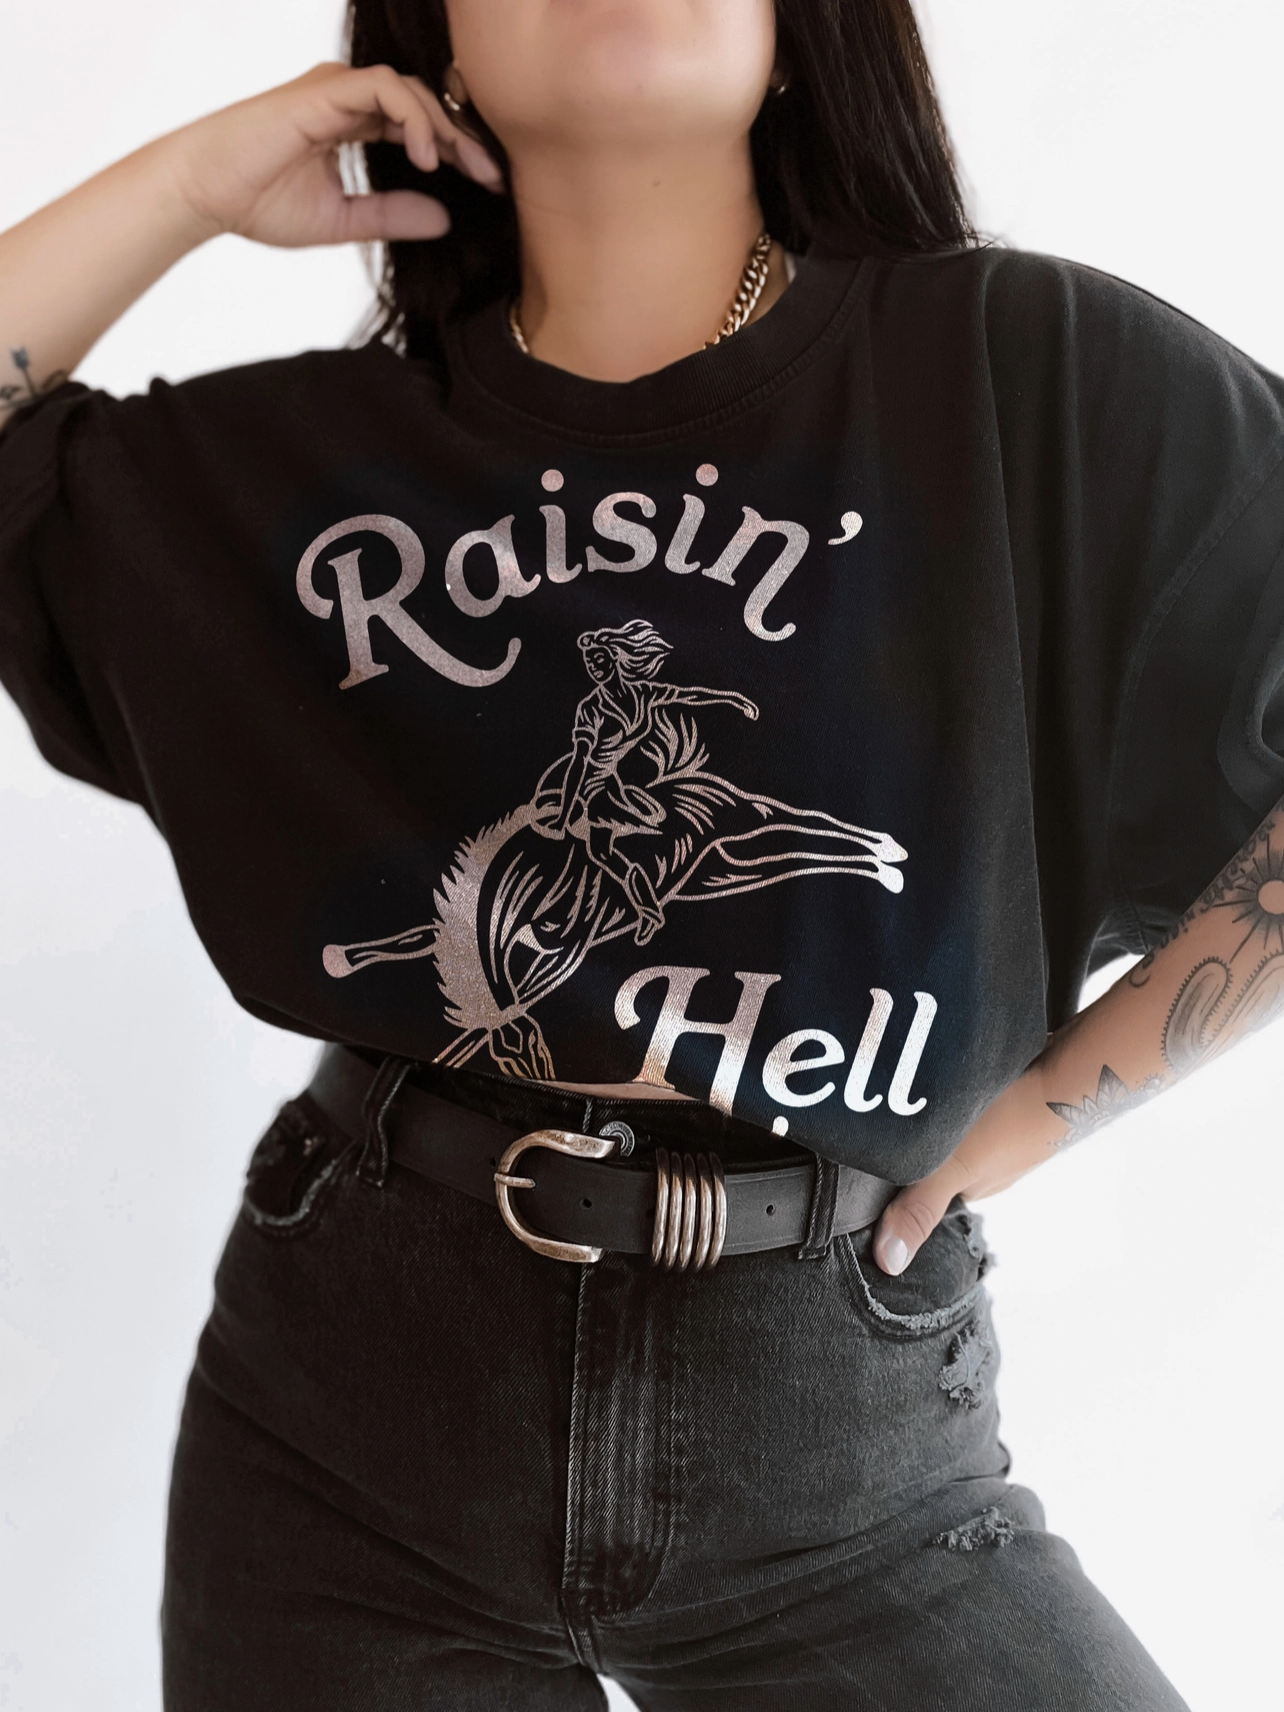 Raisin’ Hell Tee